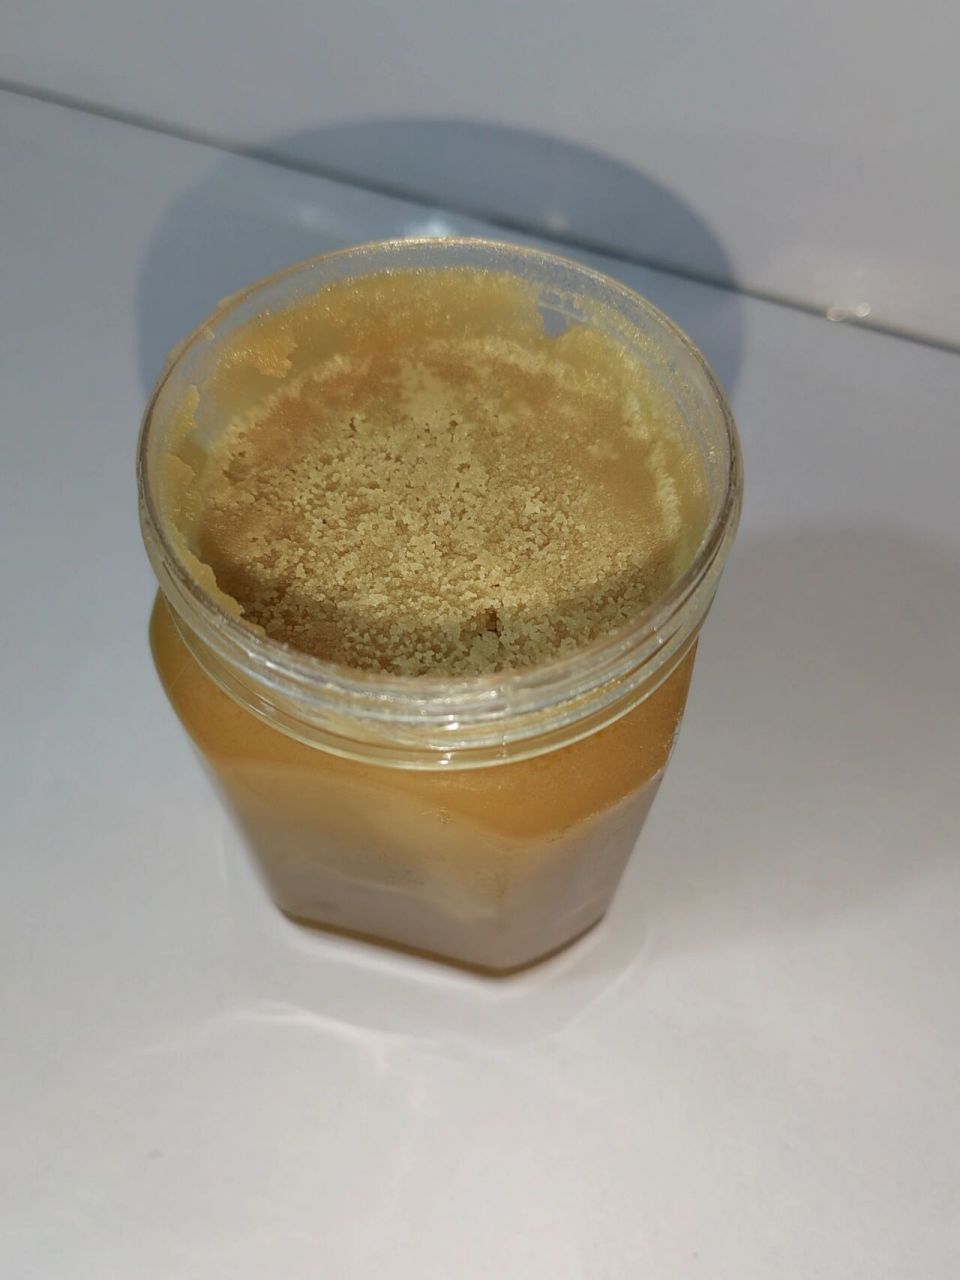 第20天 蜂蜜结晶颗粒粗是掺了白糖吗?